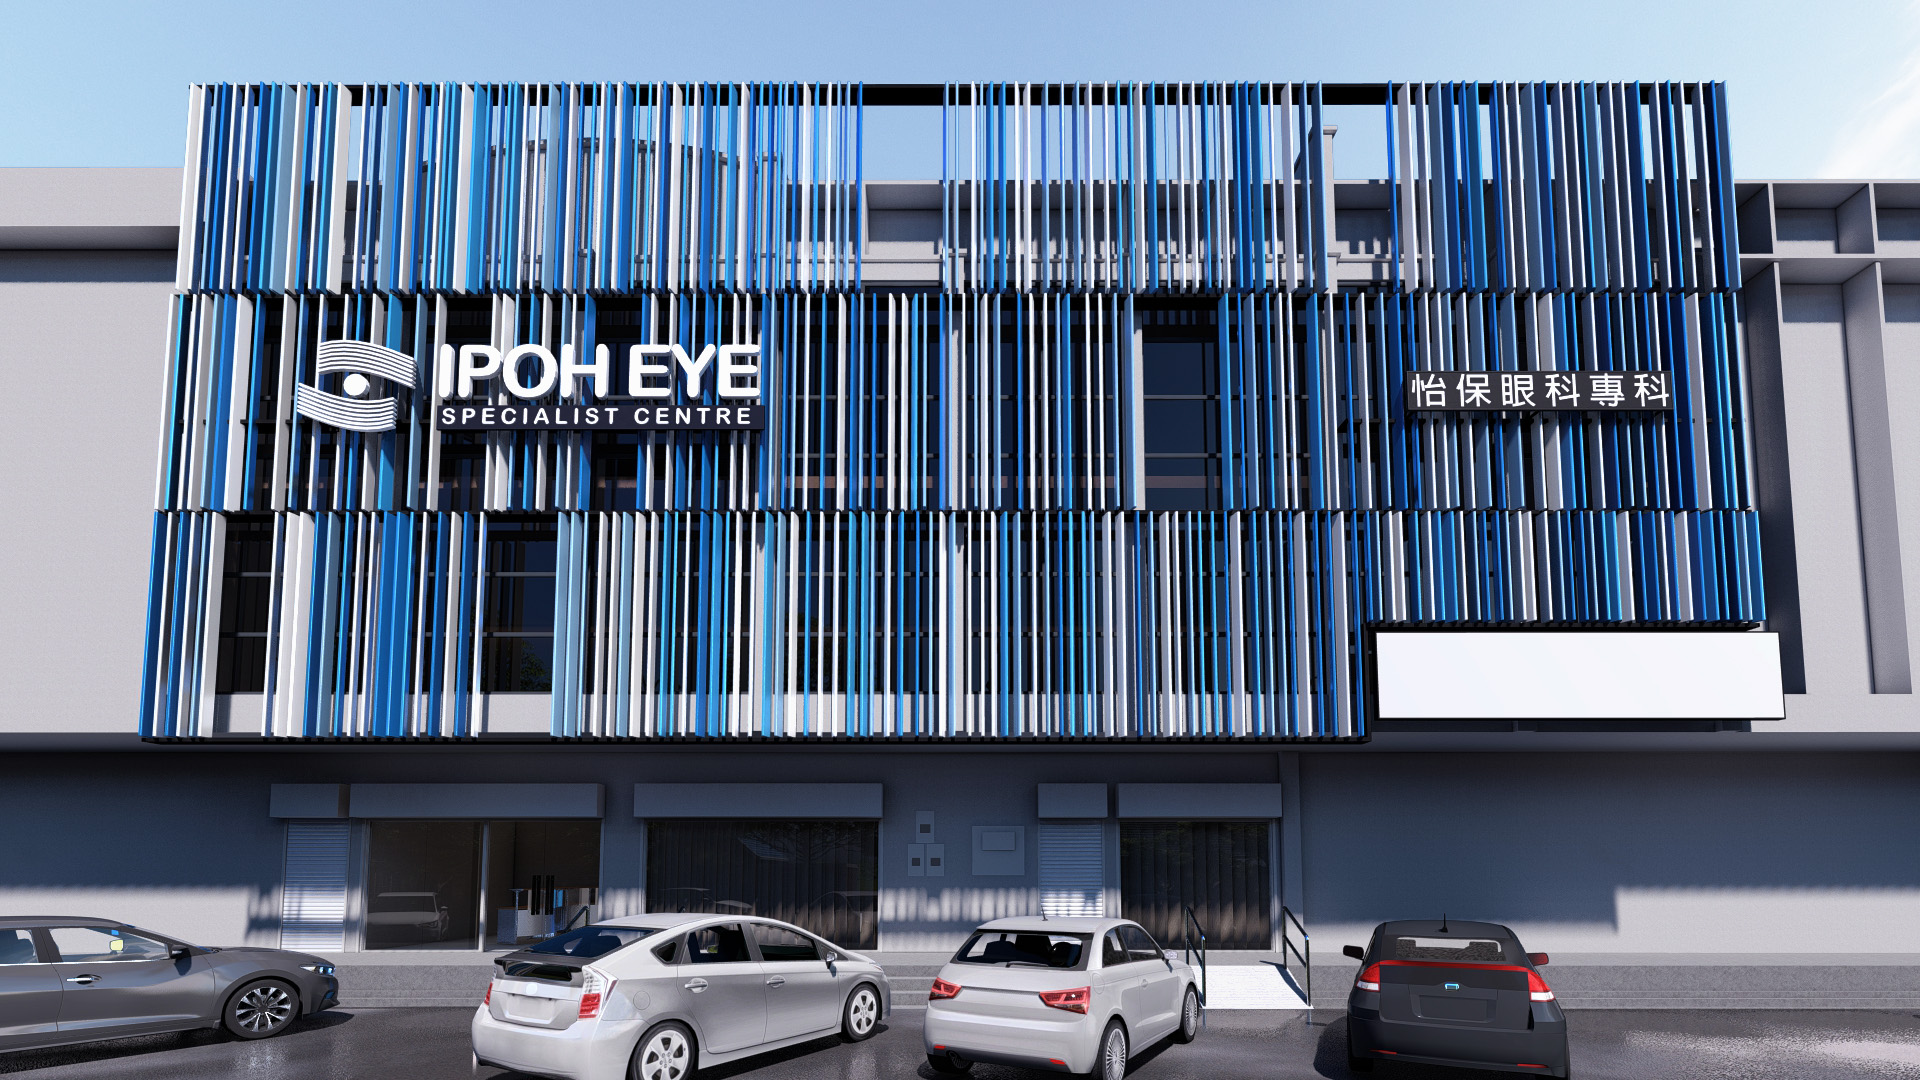 Ipoh Eye Specialist Center